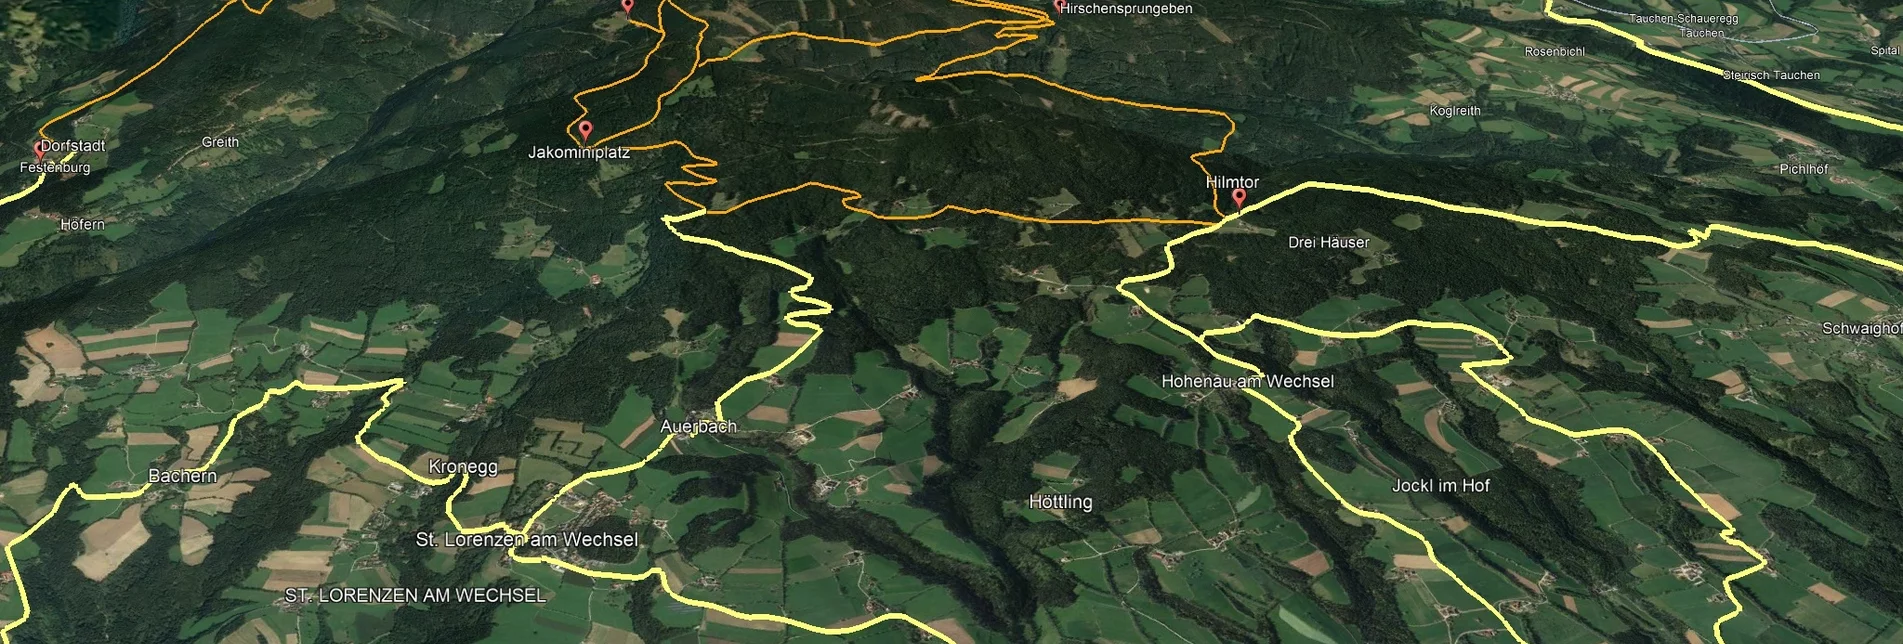 Mountain Biking Styrian Wexl Trails - feeder road from Dechantskirchen to Hilmtor - Touren-Impression #1 | © Verein Tourismusentwicklung Steirischer Wechsel